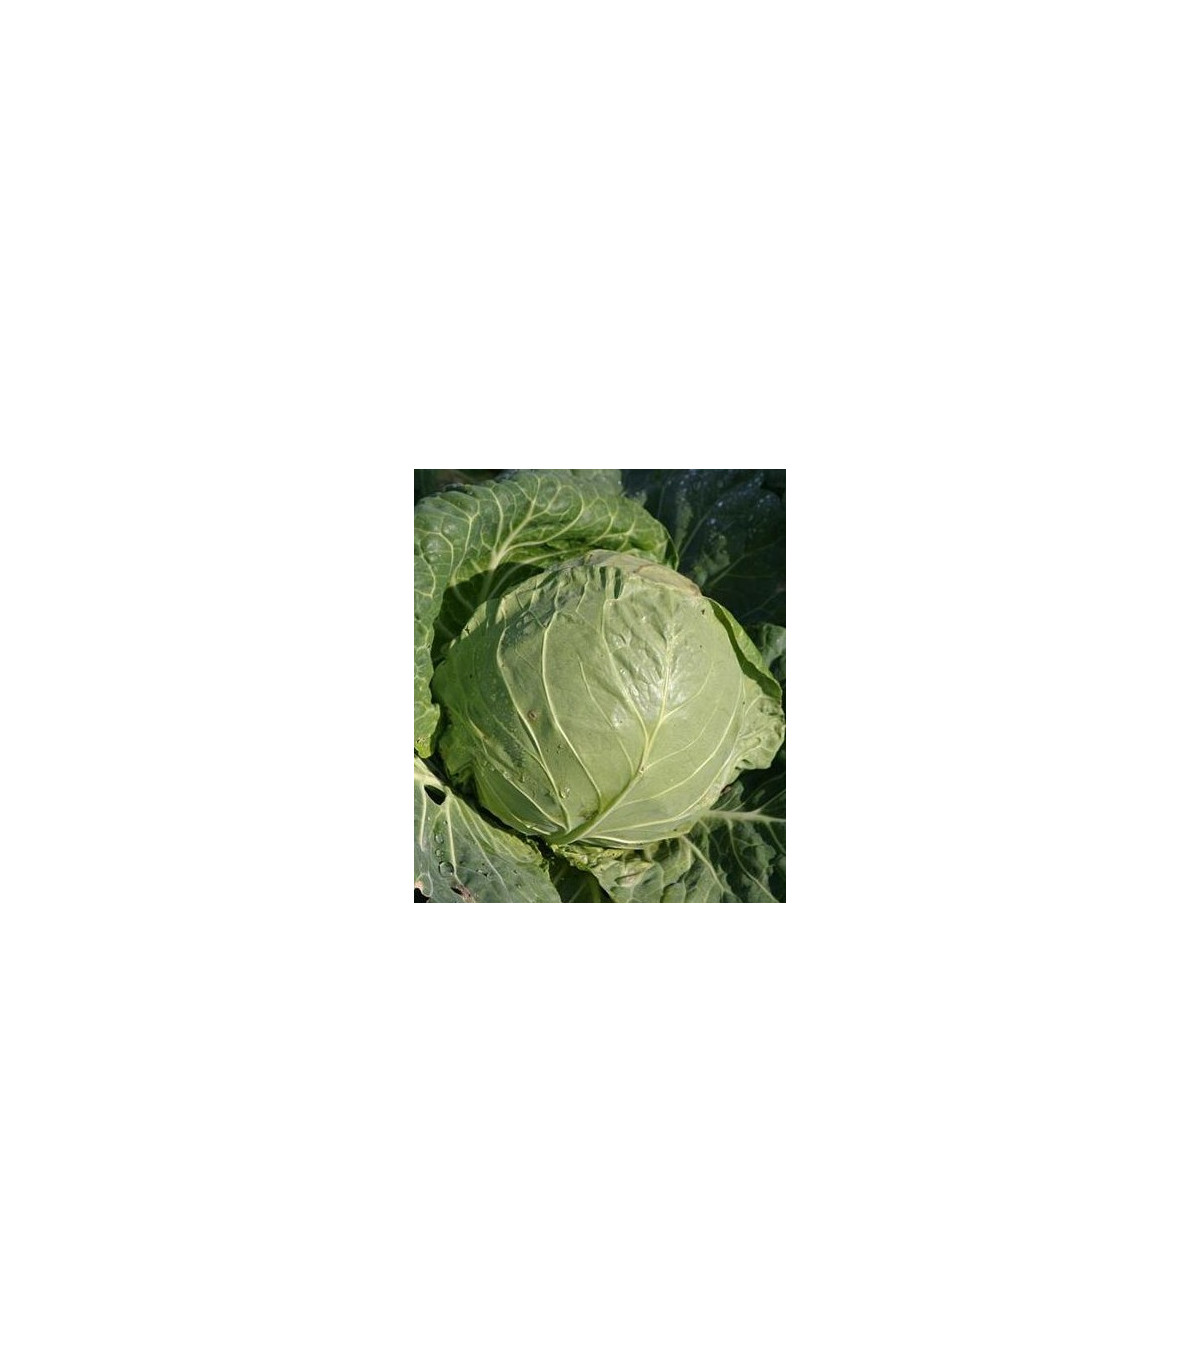 BIO Bílé zelí Premier - Brassica oleracea - bio osivo zelí - 0,3 g